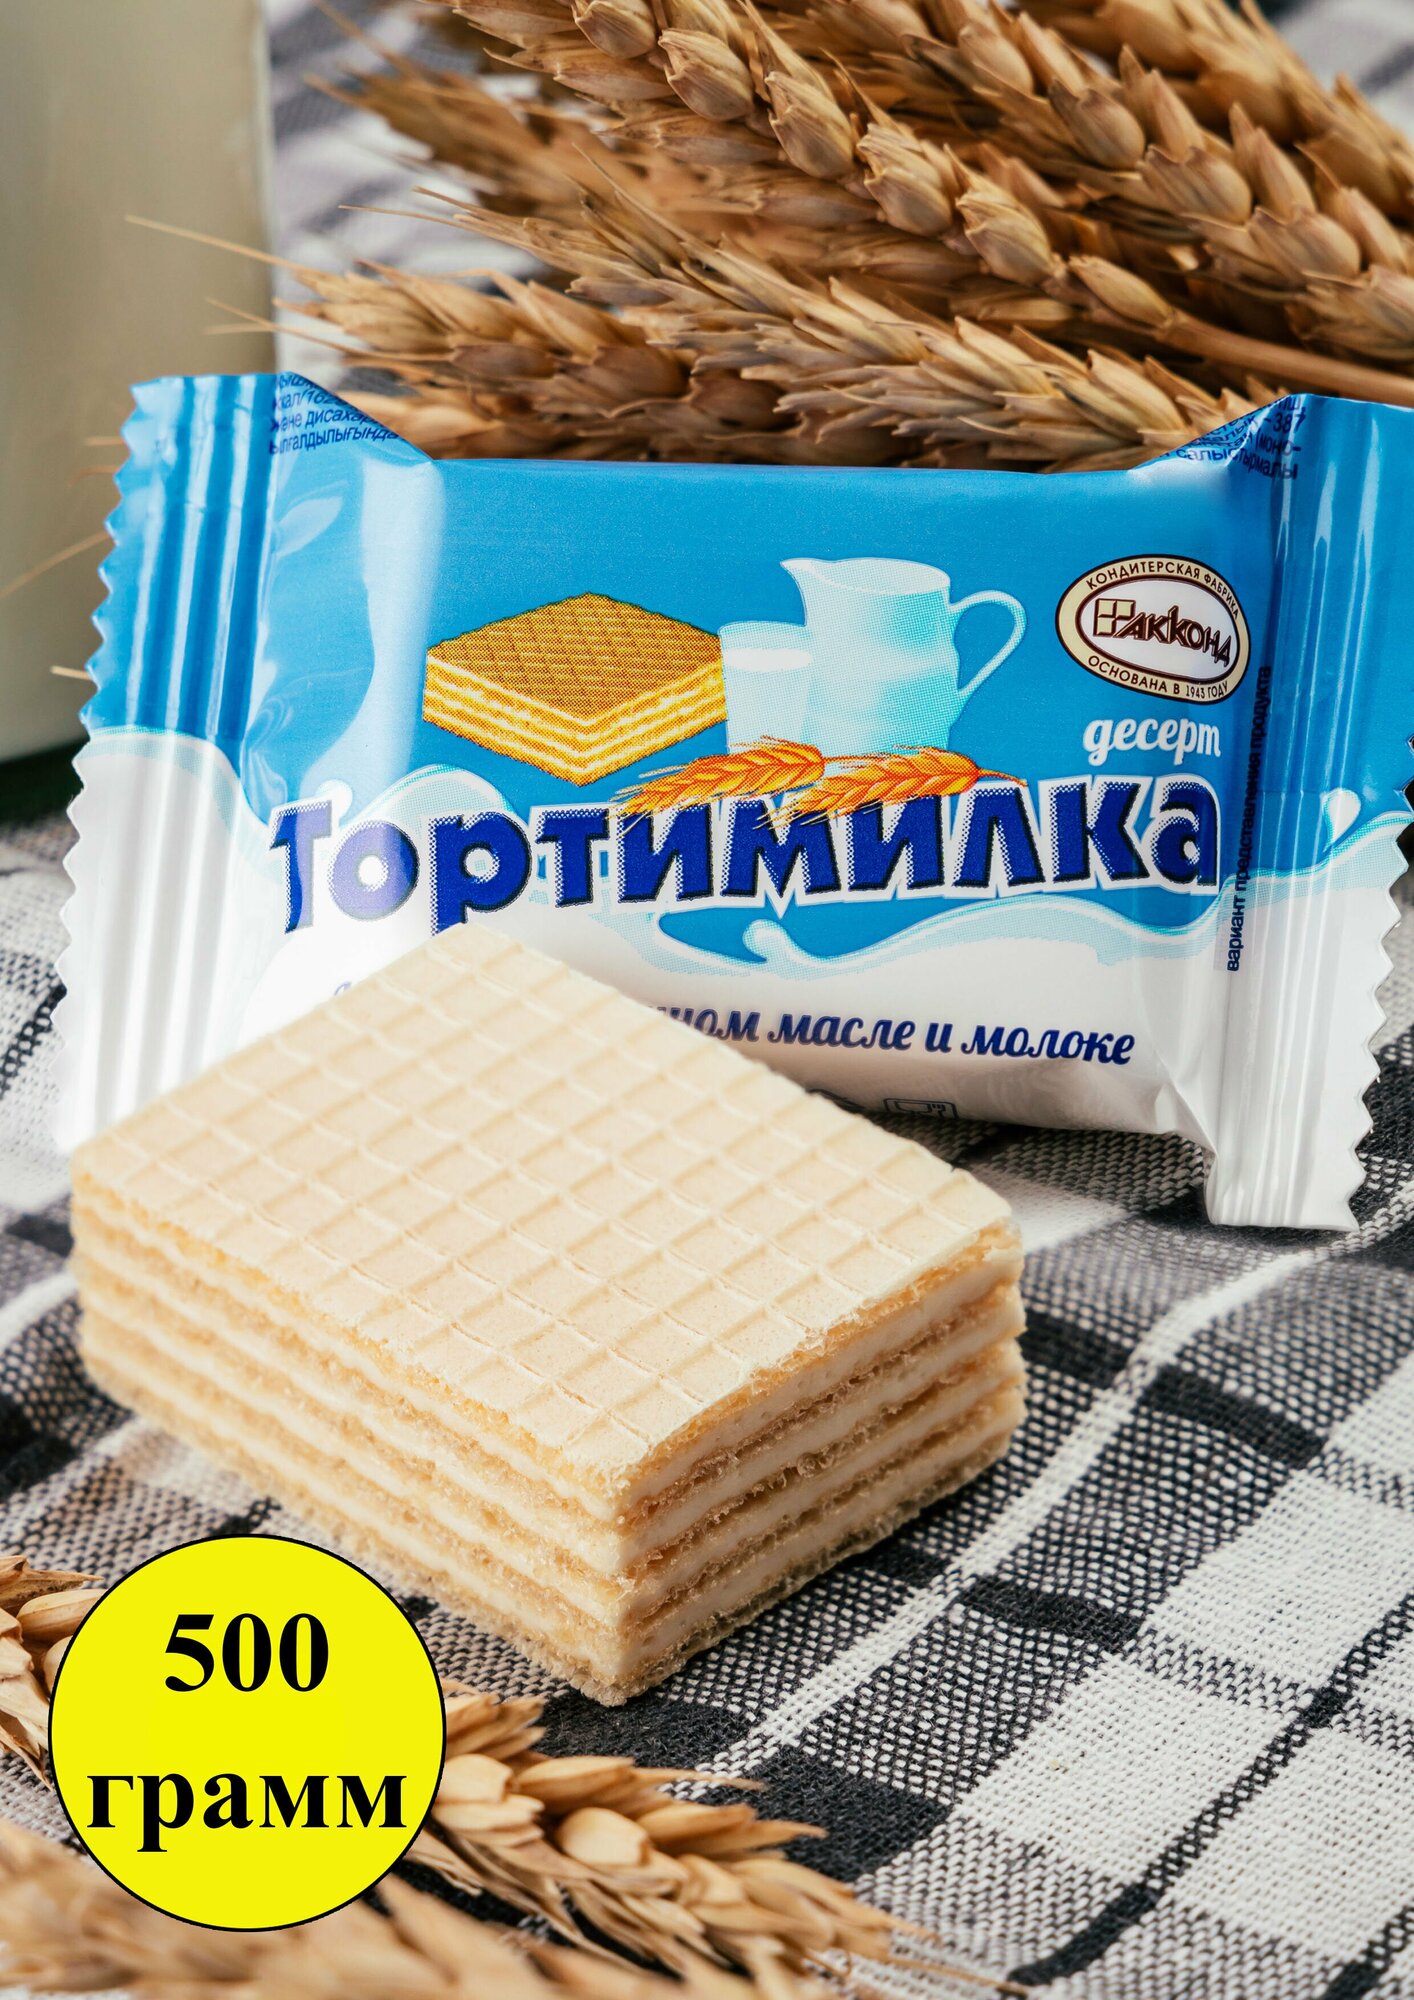 Конфеты Акконд Тортимилка десерт, 500 г